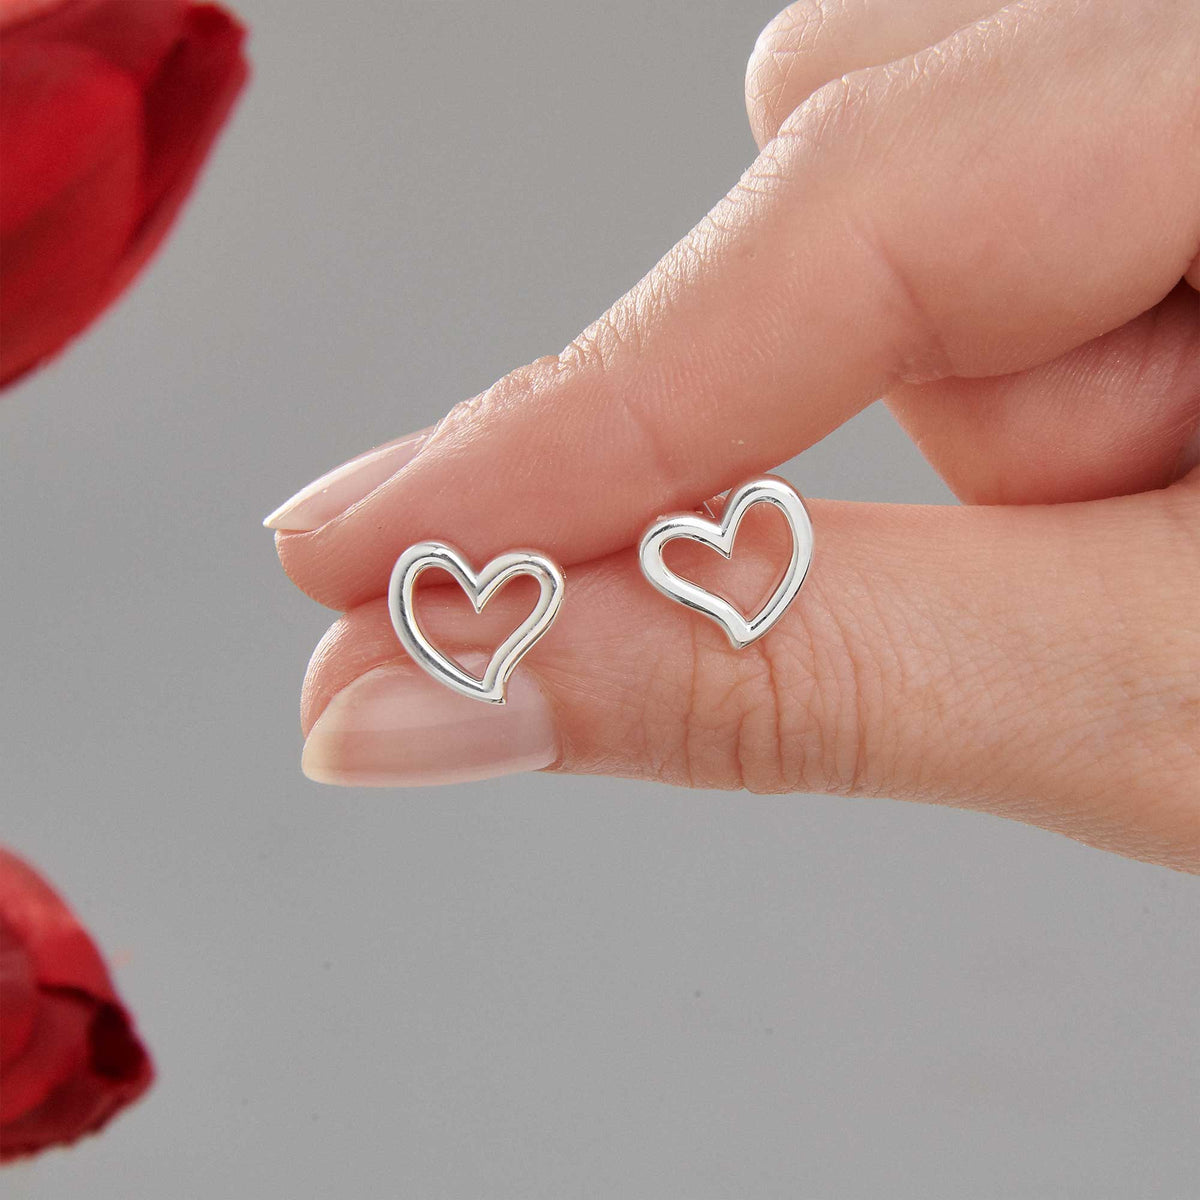 solid silver open heart stud earrings for women gift for girlfiend wife